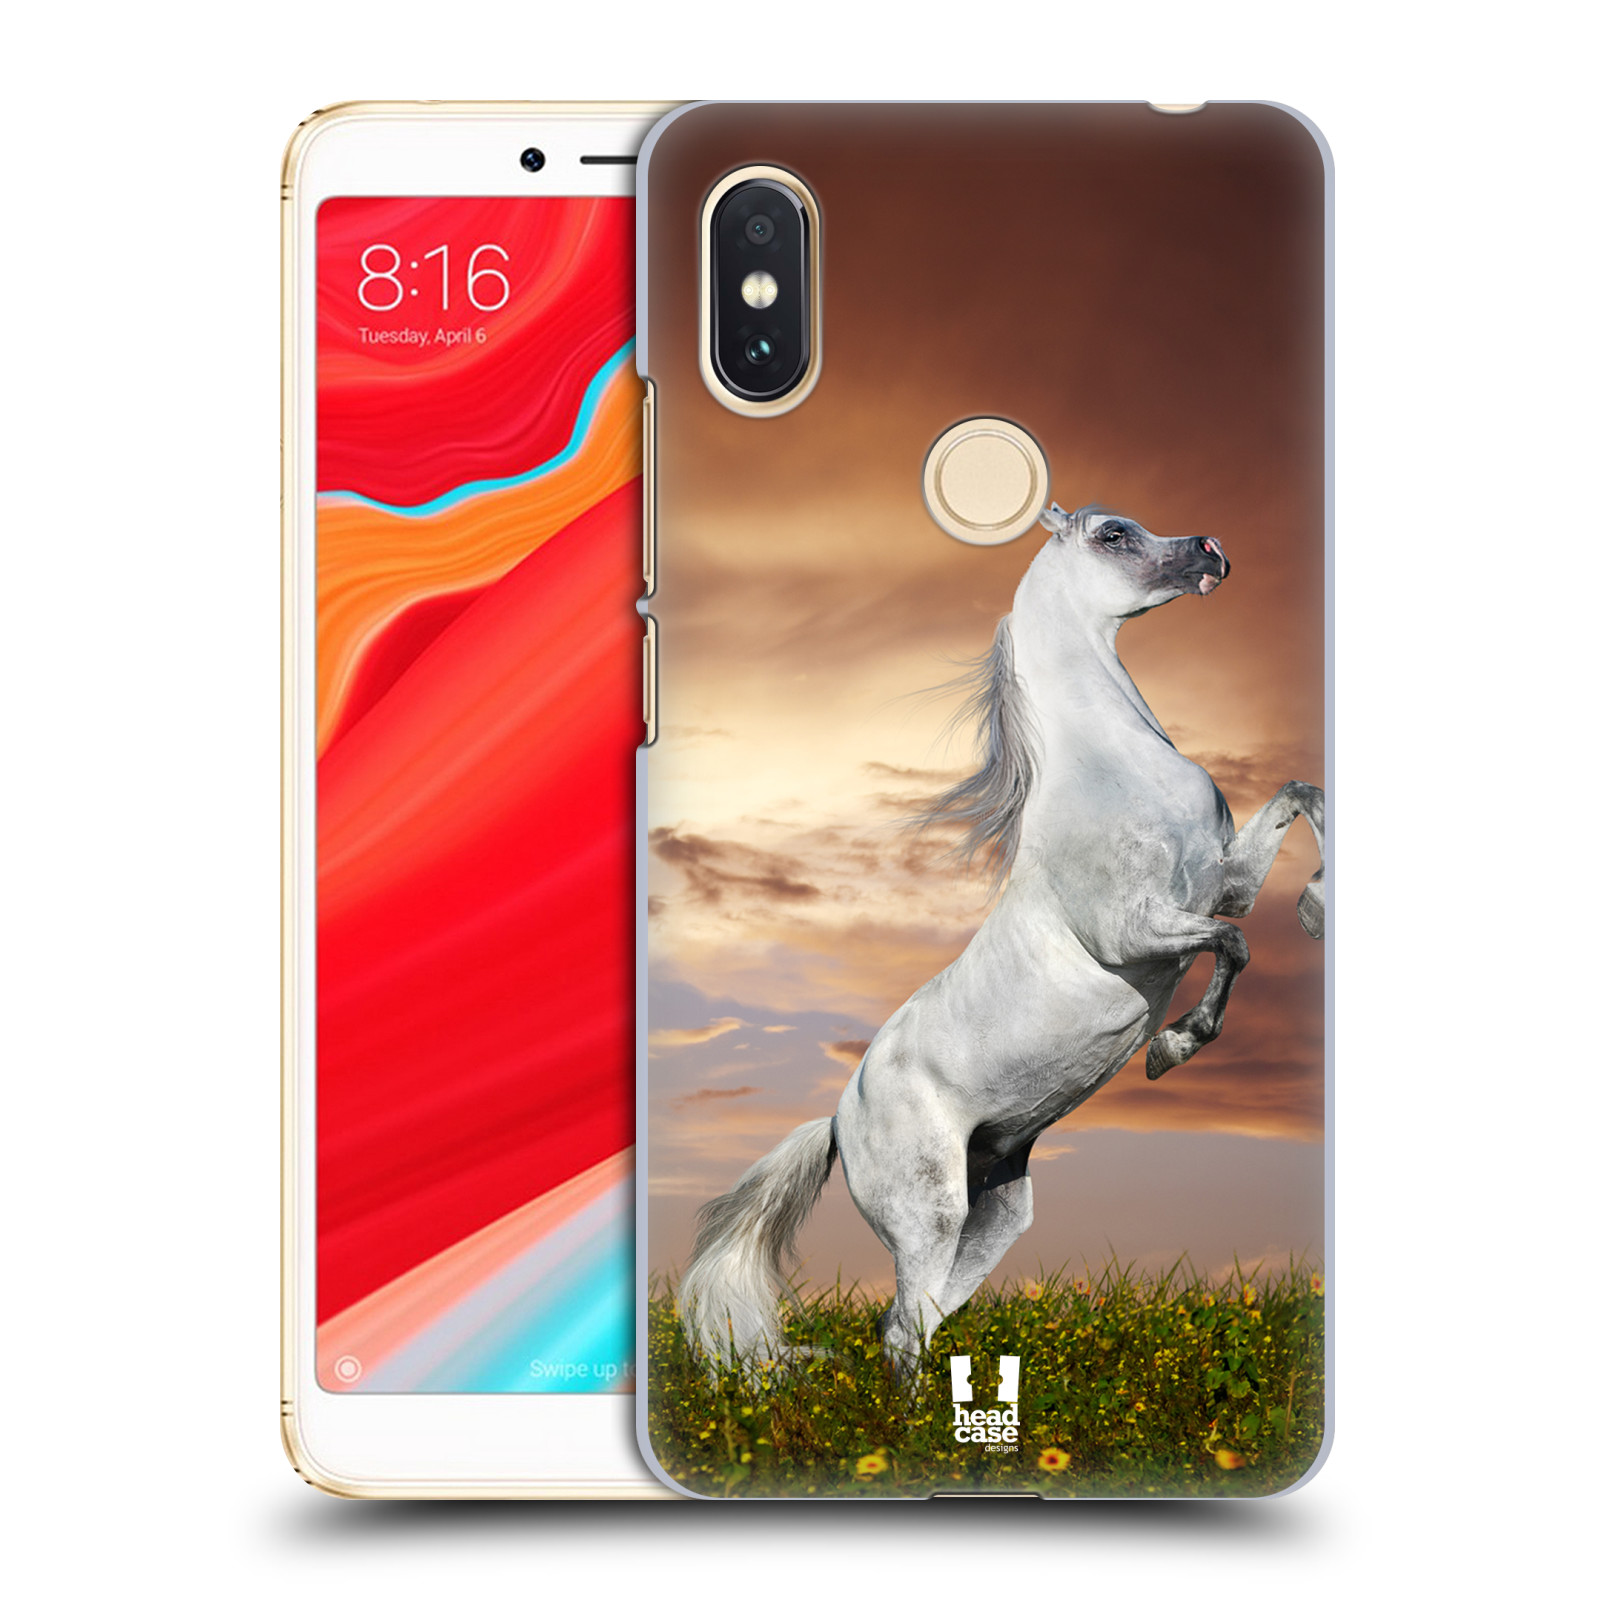 HEAD CASE plastový obal na mobil Xiaomi Redmi S2 vzor Divočina, Divoký život a zvířata foto DIVOKÝ KŮŇ MUSTANG BÍLÁ